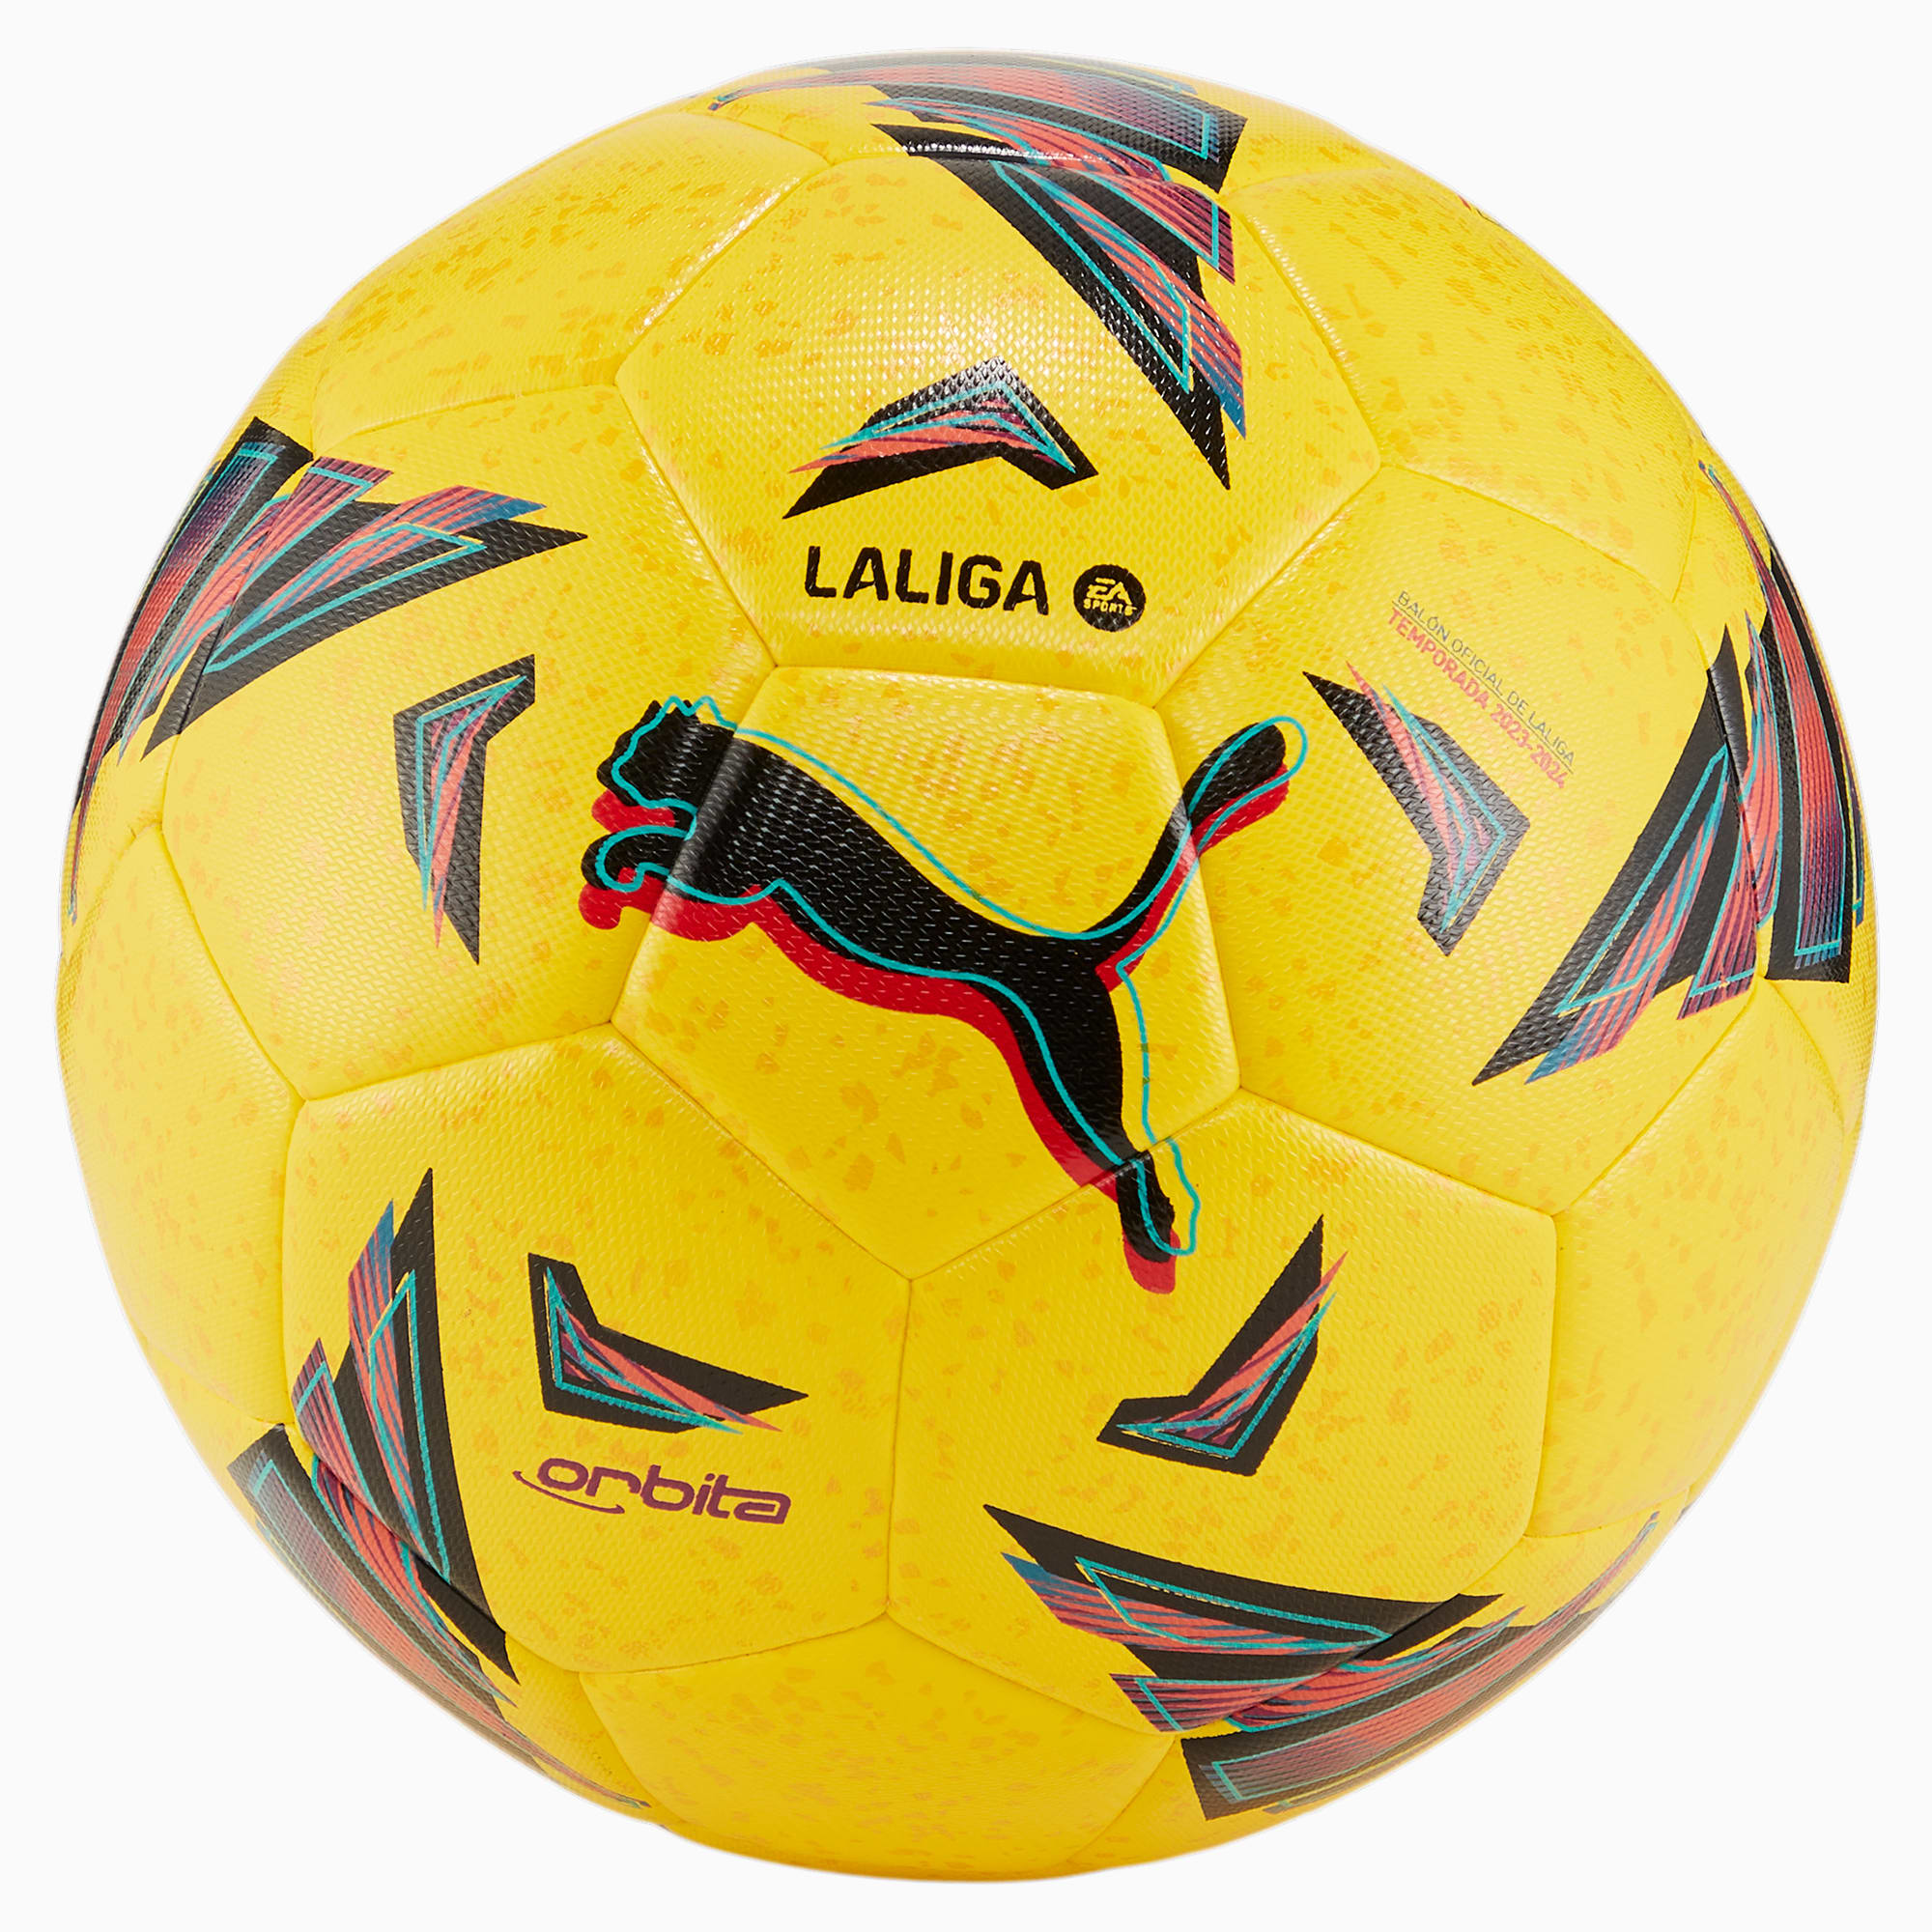 PUMA Orbita LaLiga Hybrid Trainingsfußball, Gelb, Größe: 3